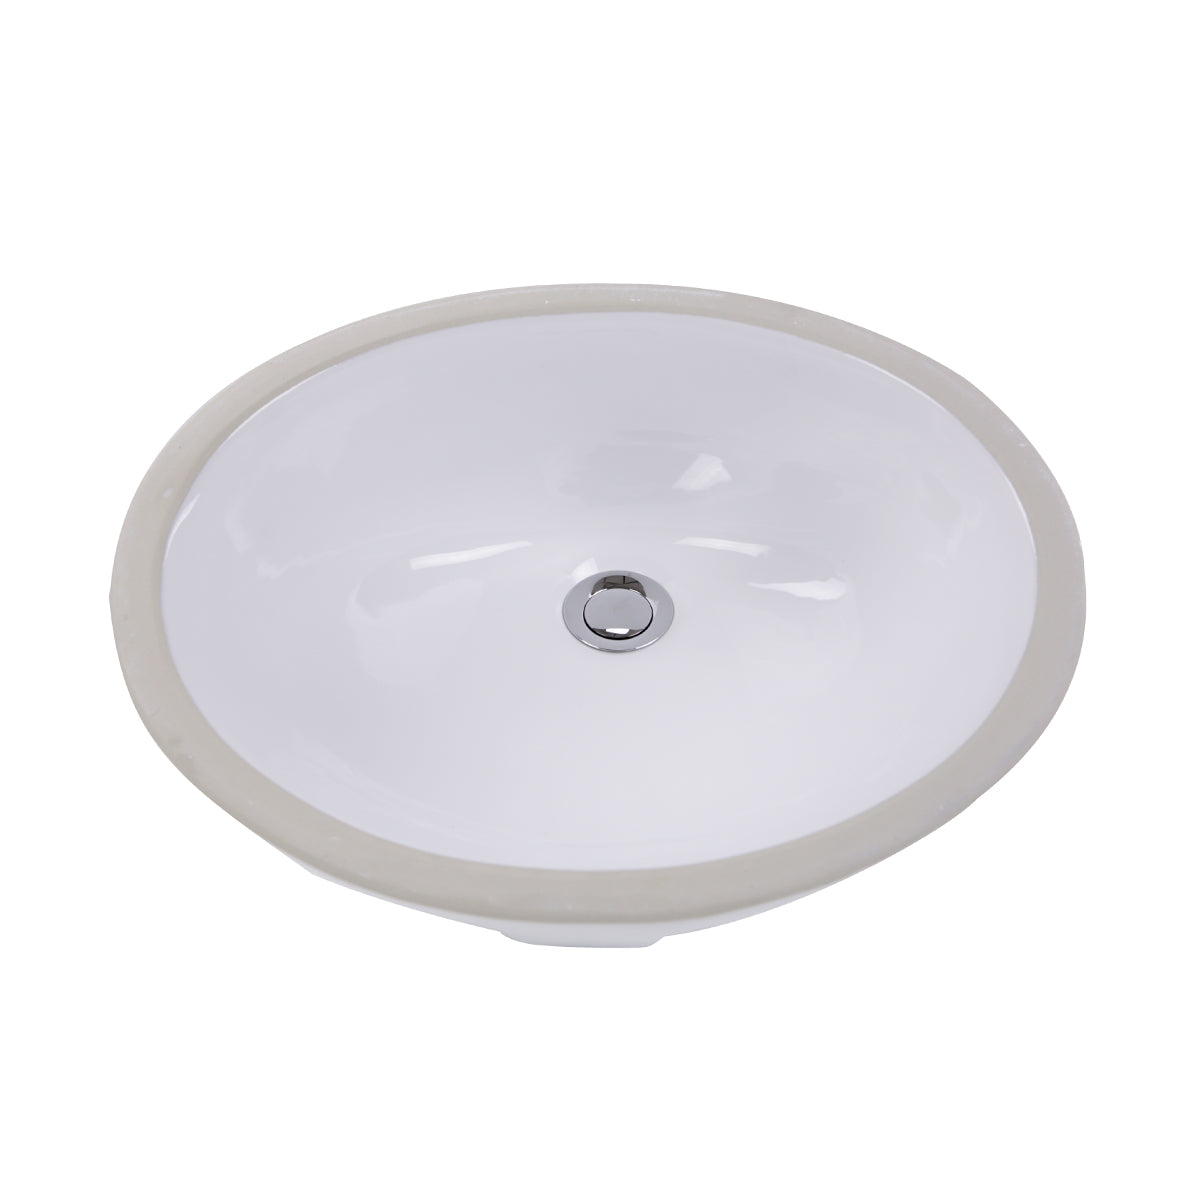 Nantucket Sinks 17 Inch x 14 Inch Glazed Bottom Undermount GB-17x17-W Oval Ceramic Sink In White